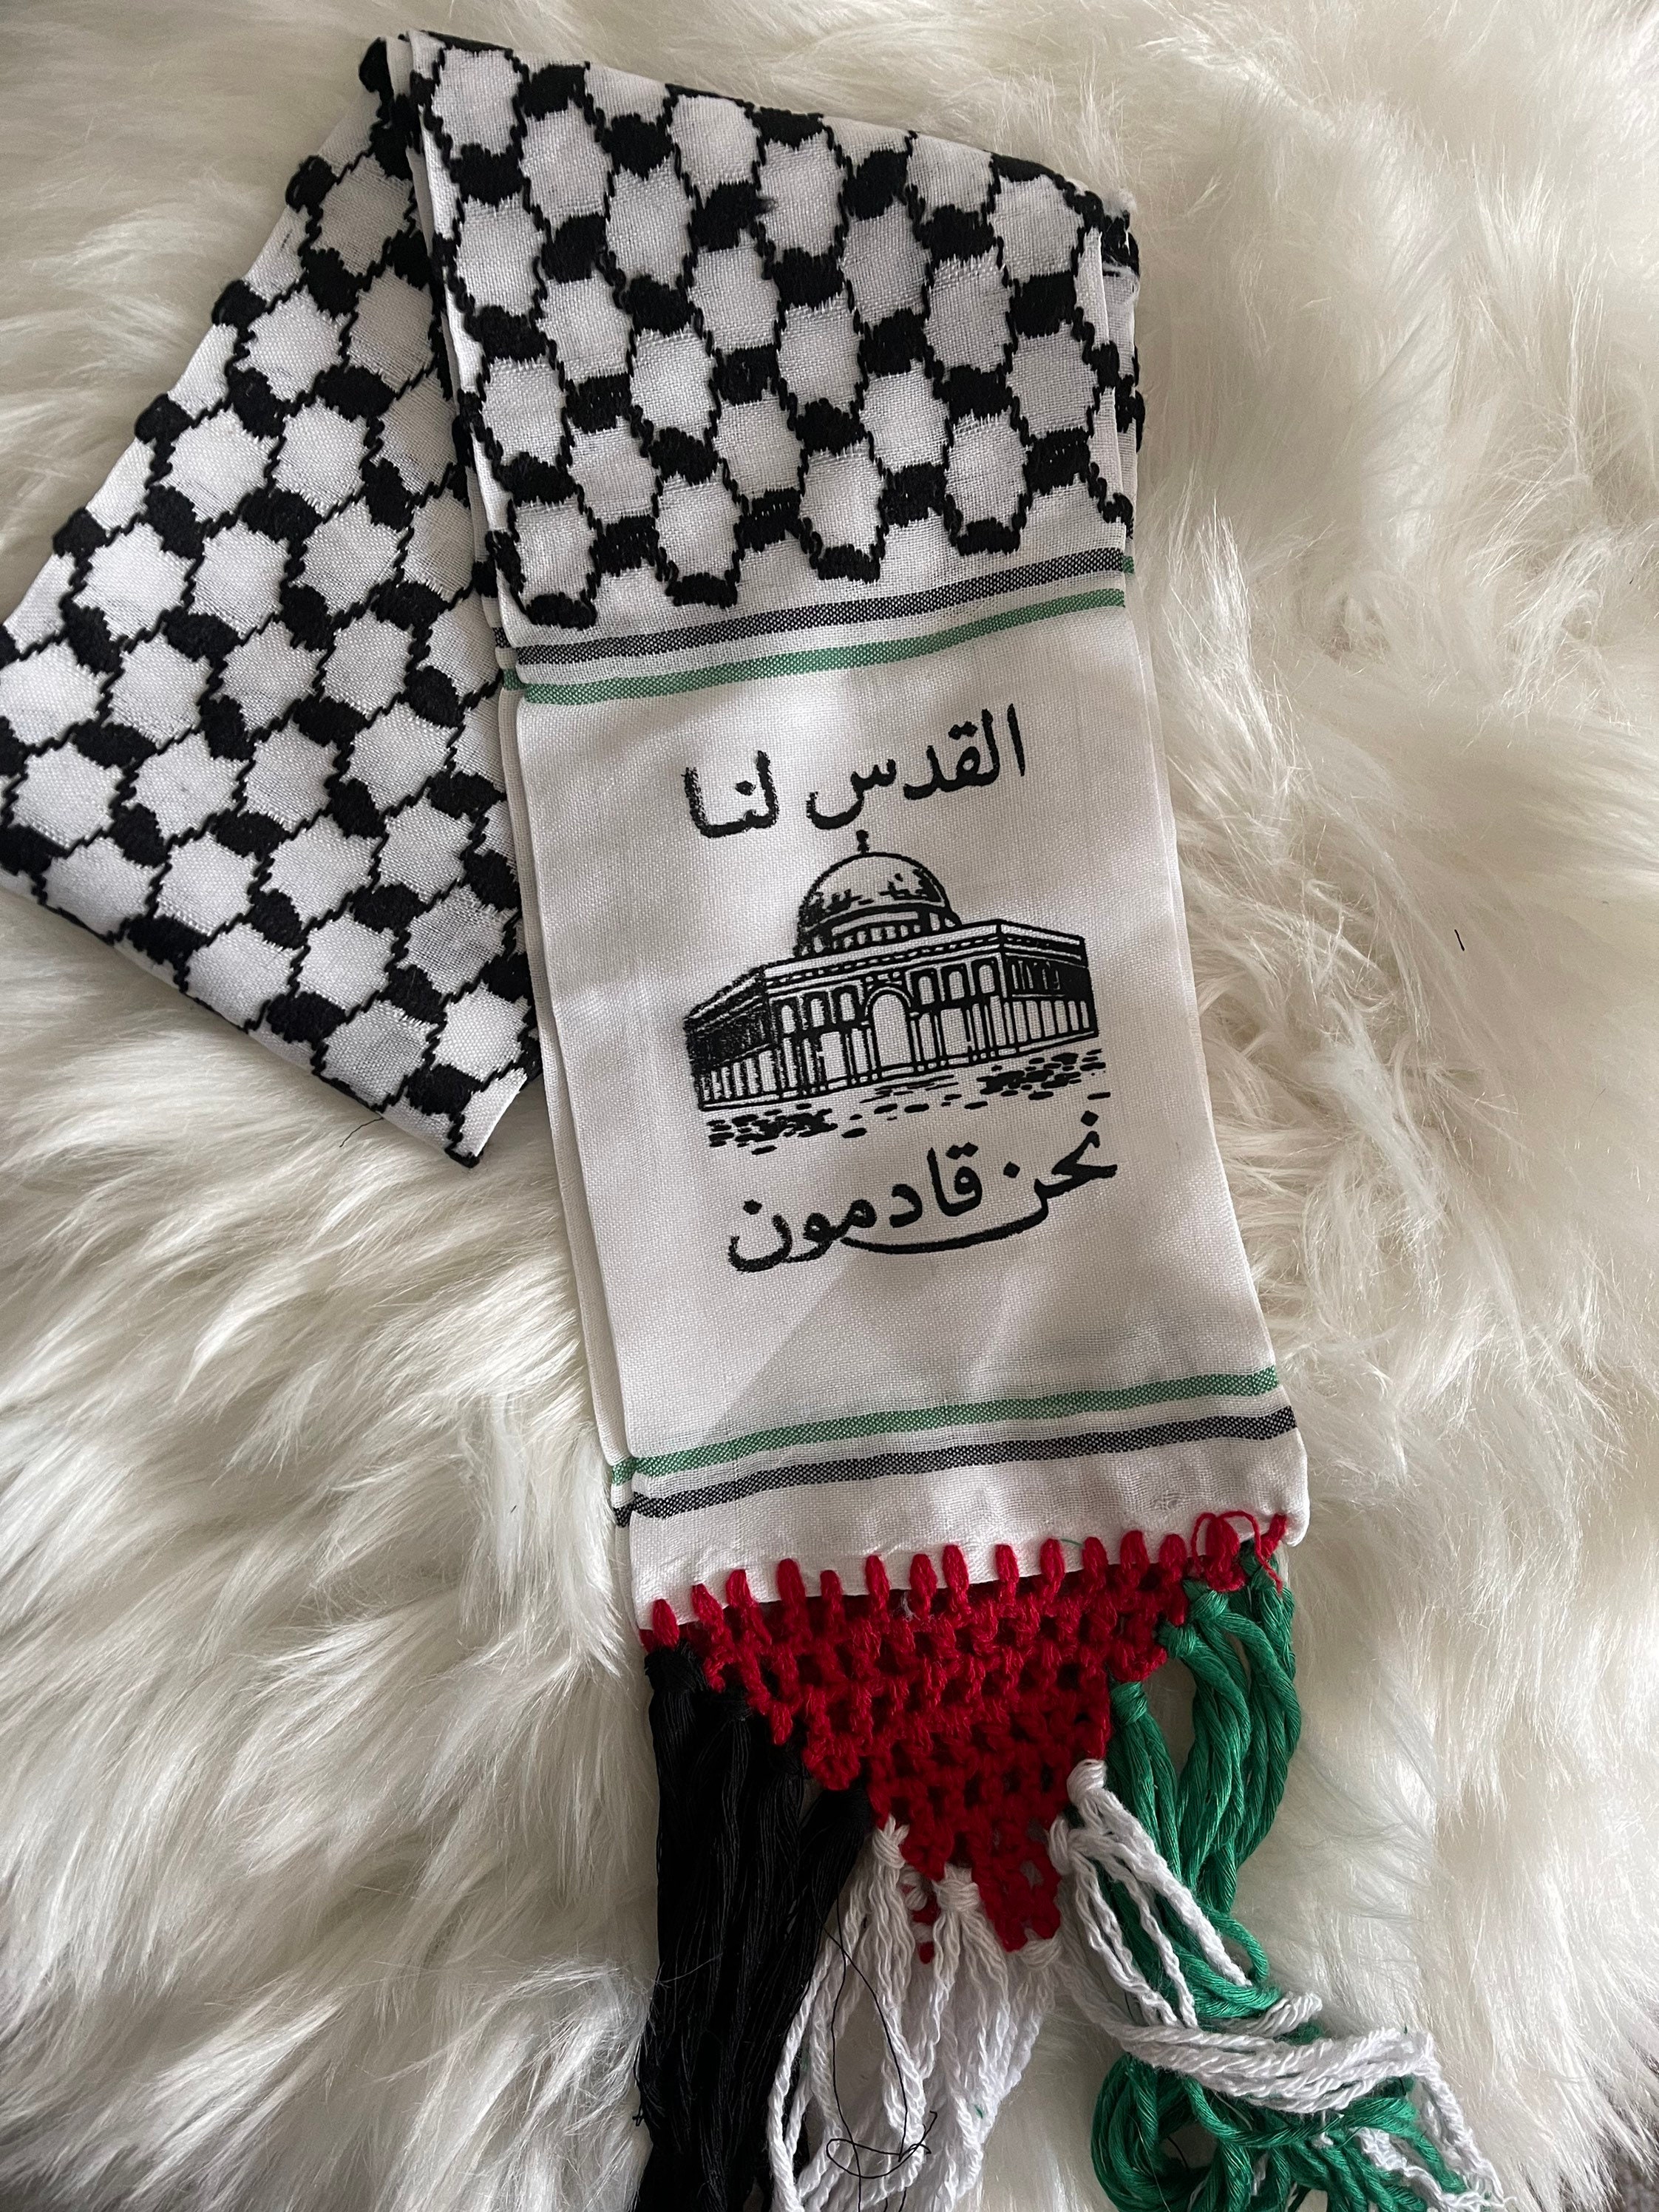 Foulard keffieh palestinien shemagh noir et blanc, rouge et blanc uni blanc  Foulard hatta Palestine 100 % coton pour homme et femme -  France